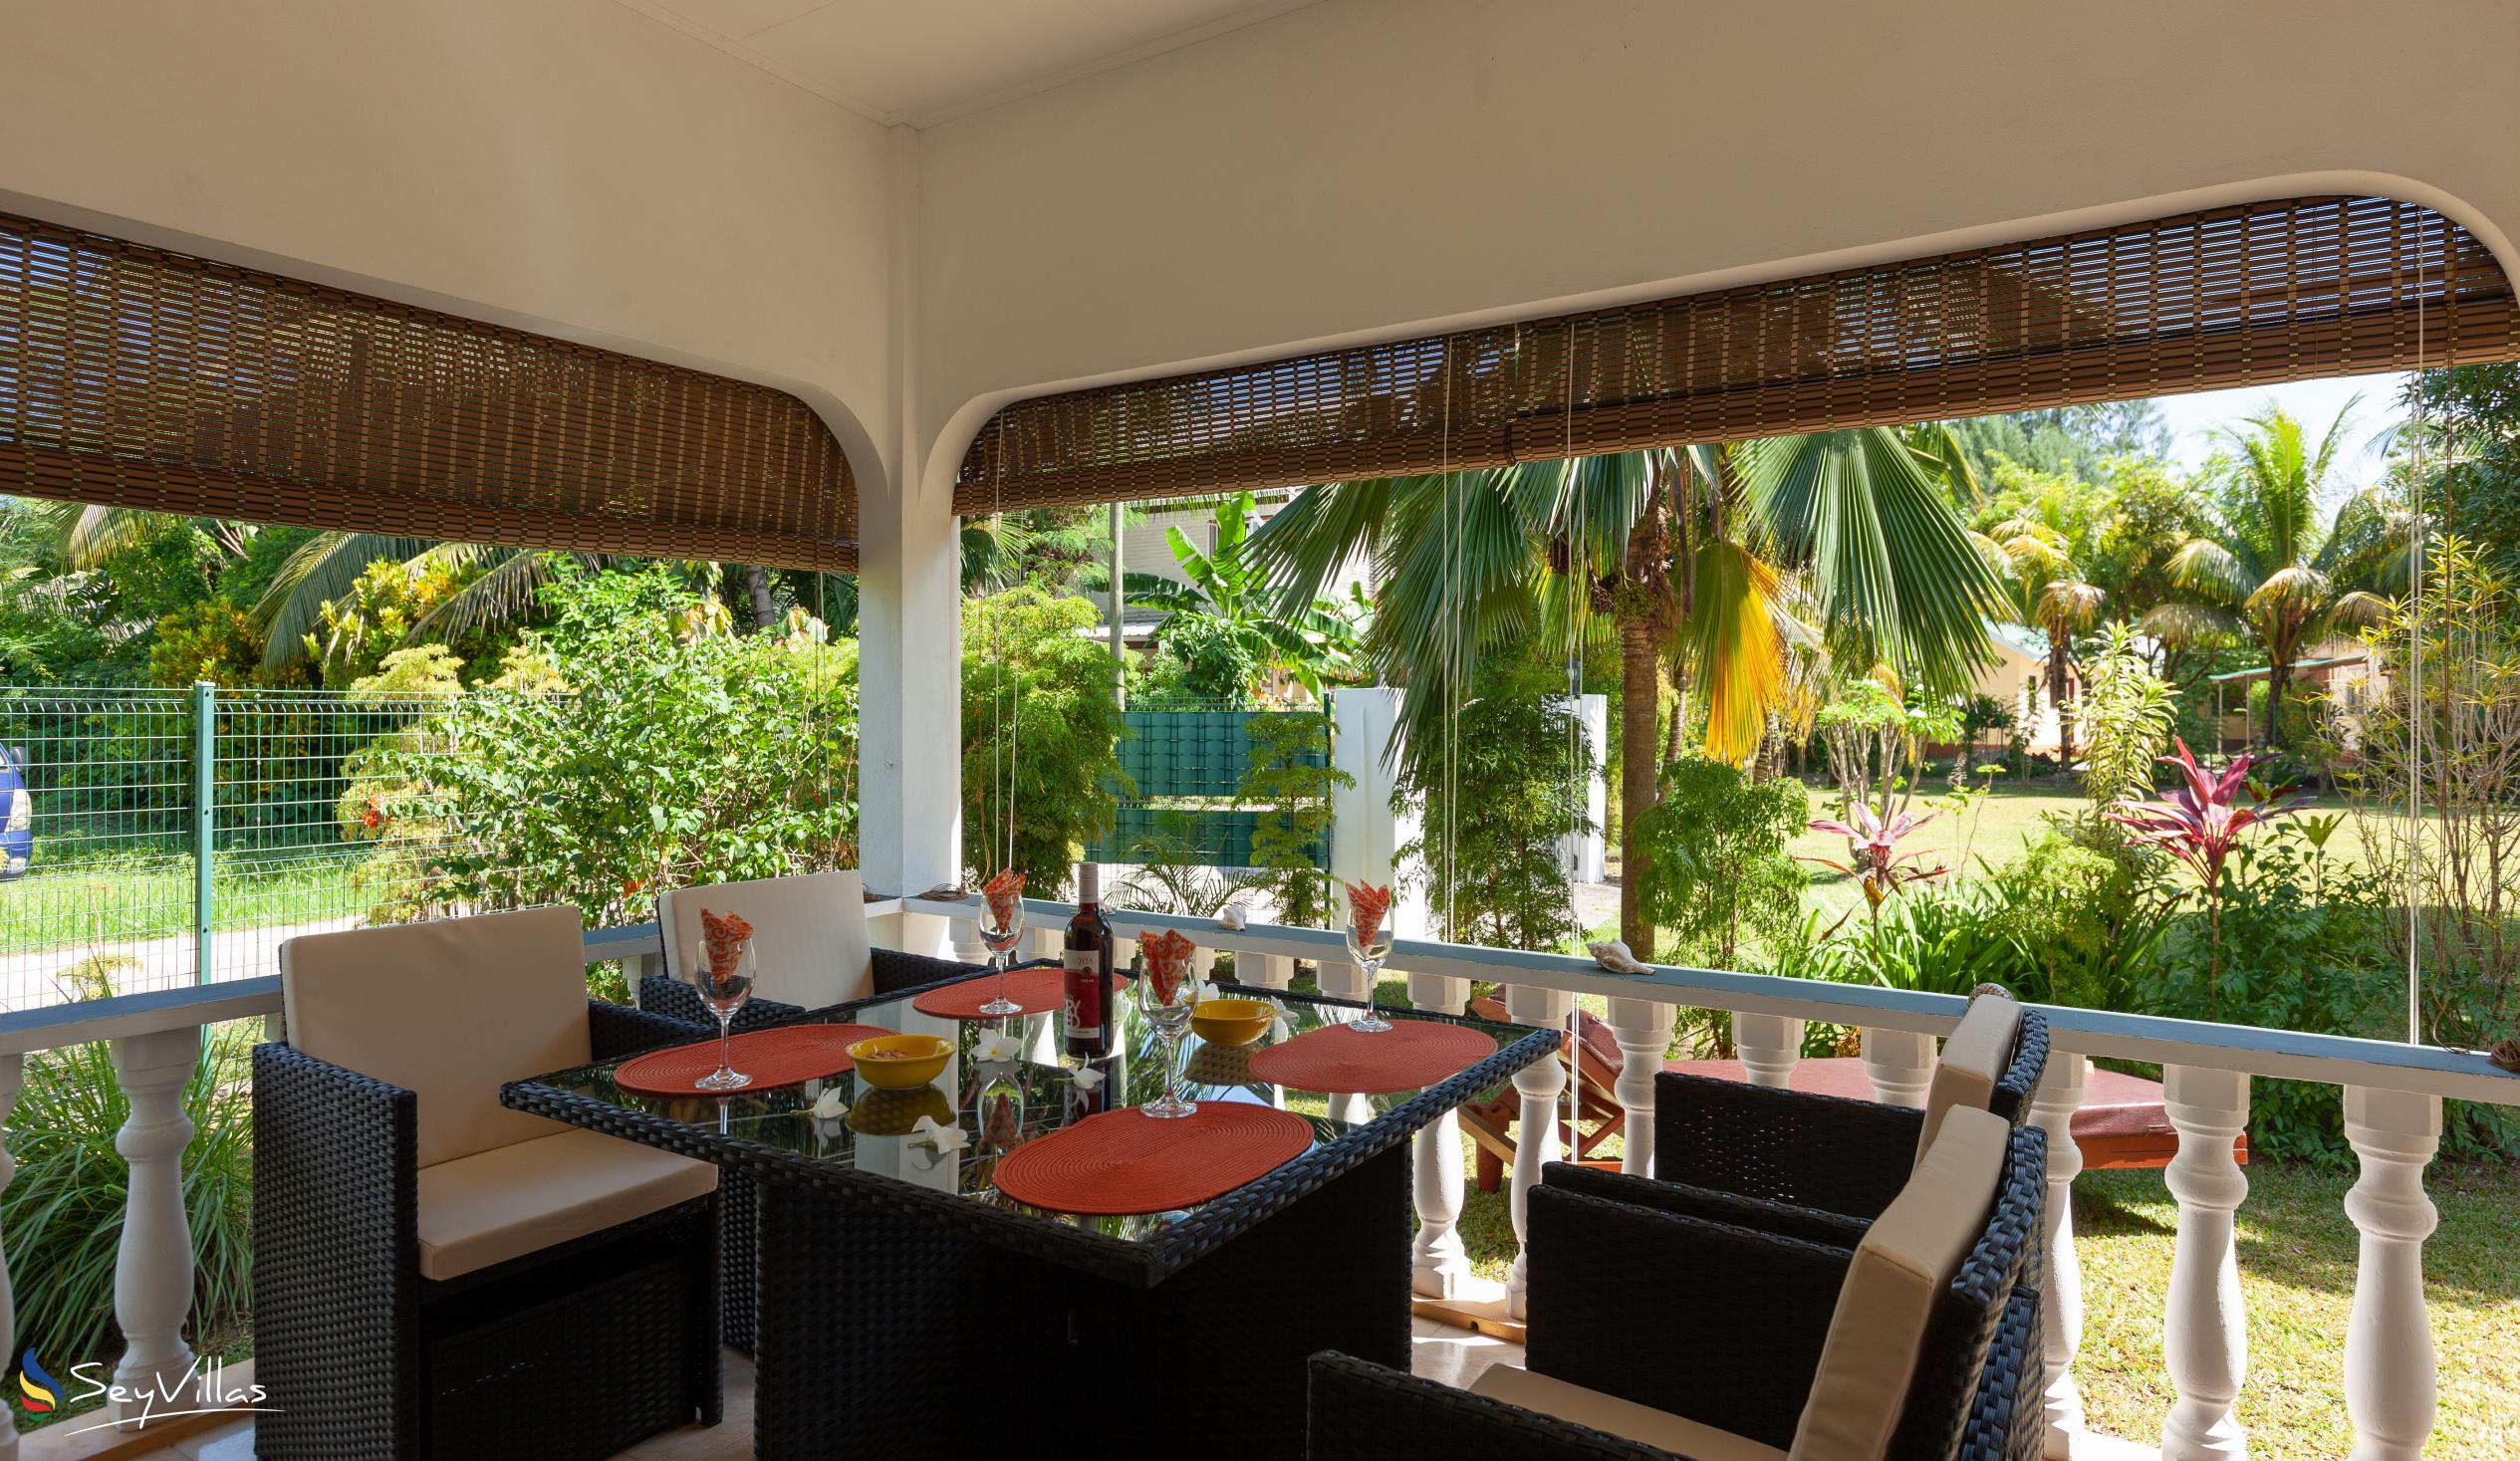 Foto 12: Chez Marlin - Maison d’hôtes de 2 chambres - Praslin (Seychelles)